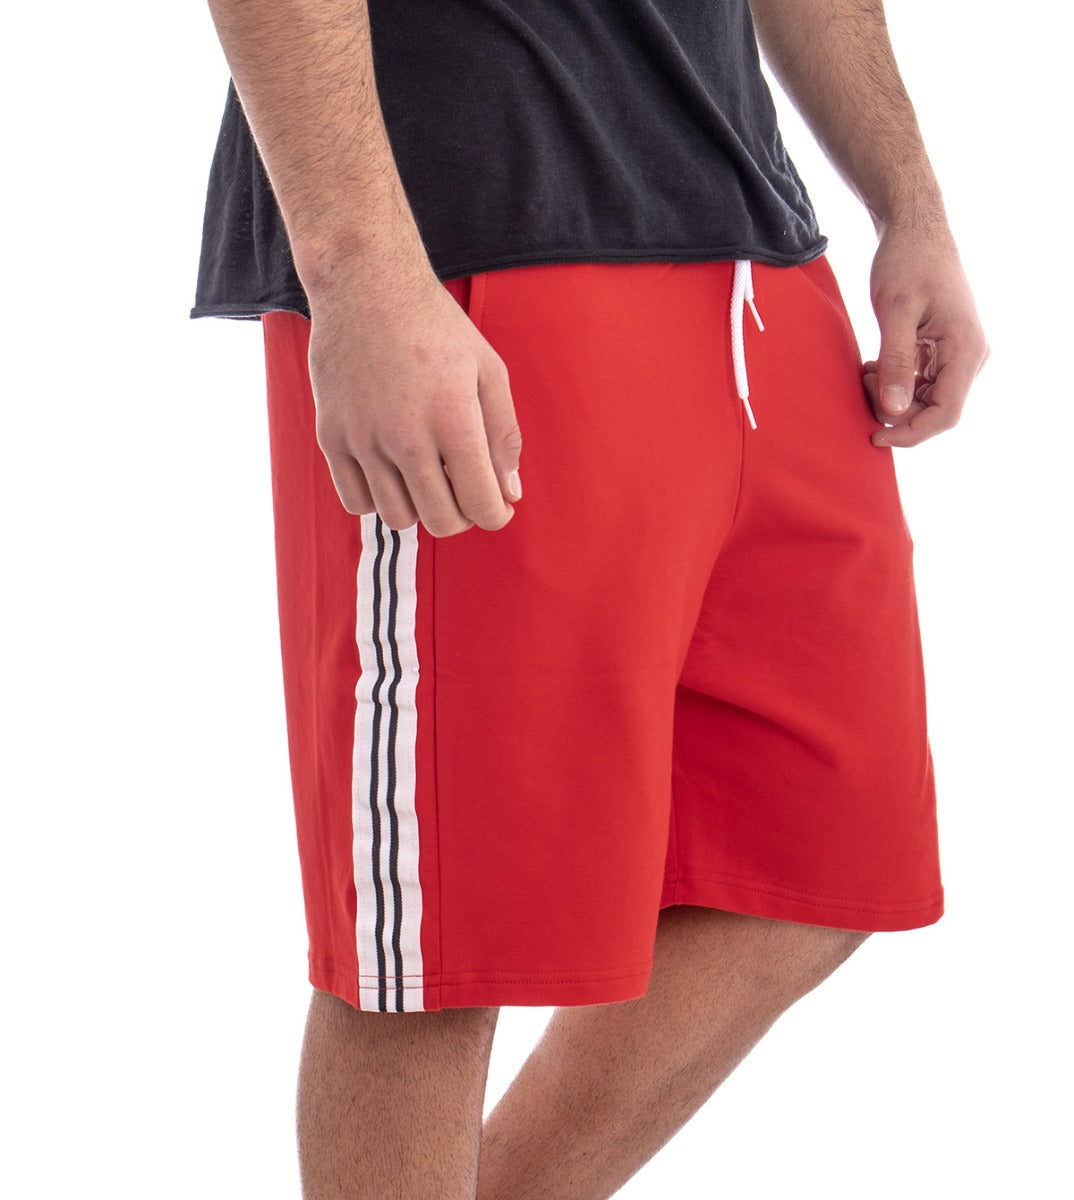 Bermuda Pantaloncino Uomo Corto Tuta Tinta Unita Rosso GIOSAL-PC1273A